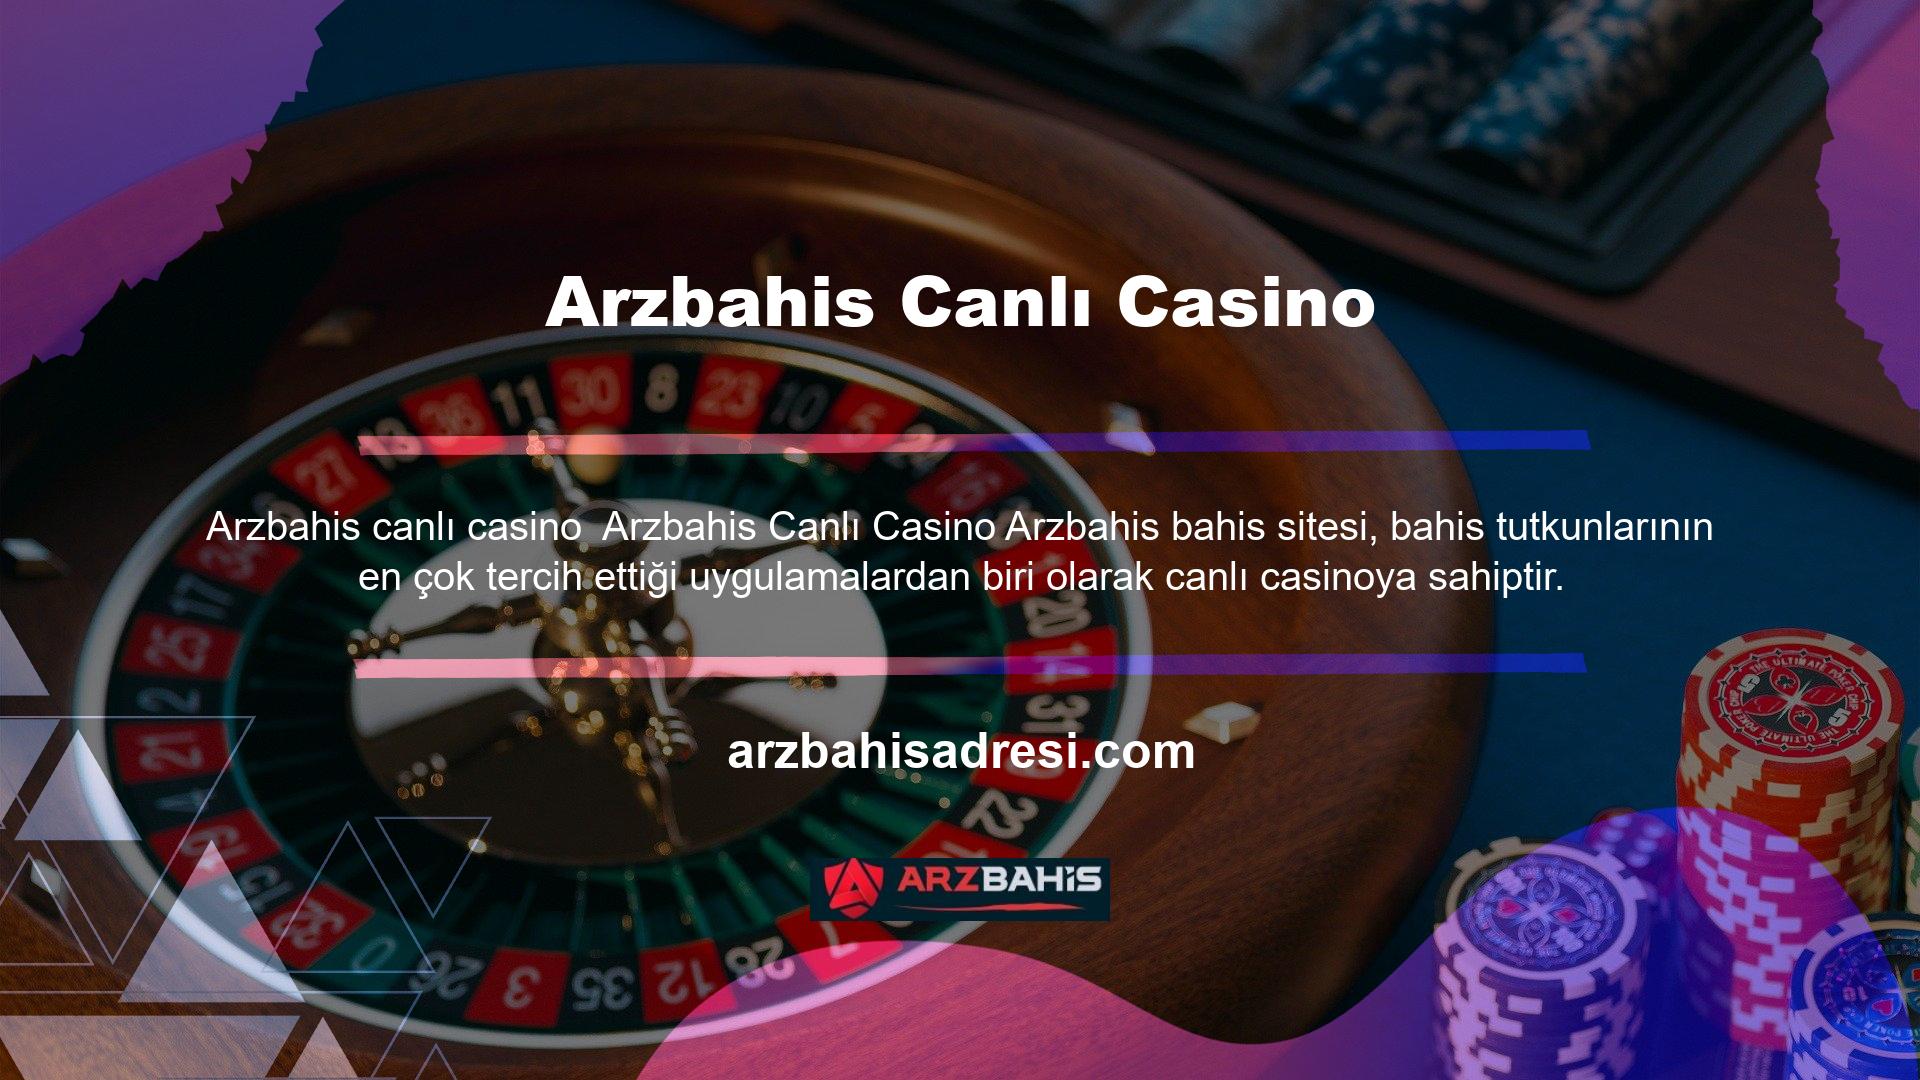 Arzbahis canlı casino uygulaması, geniş oyun yelpazesi ile öne çıkıyor